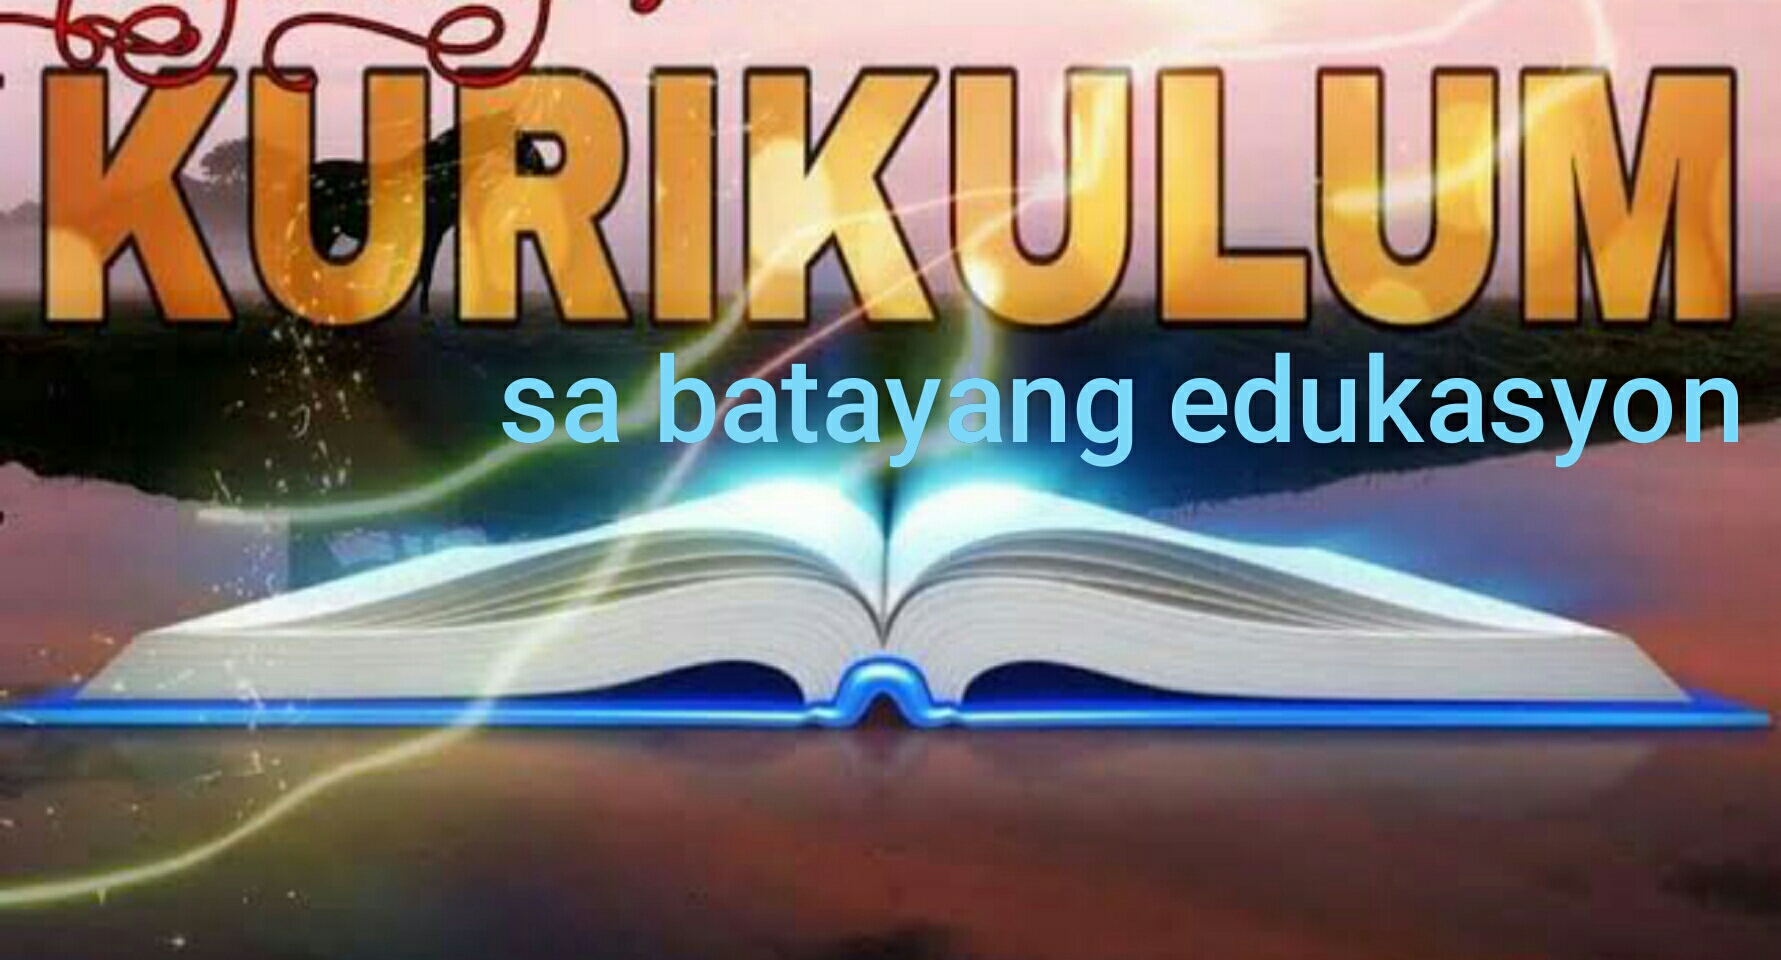 Ang Filipino sa Batayang Kurikulum ng Edukasyon